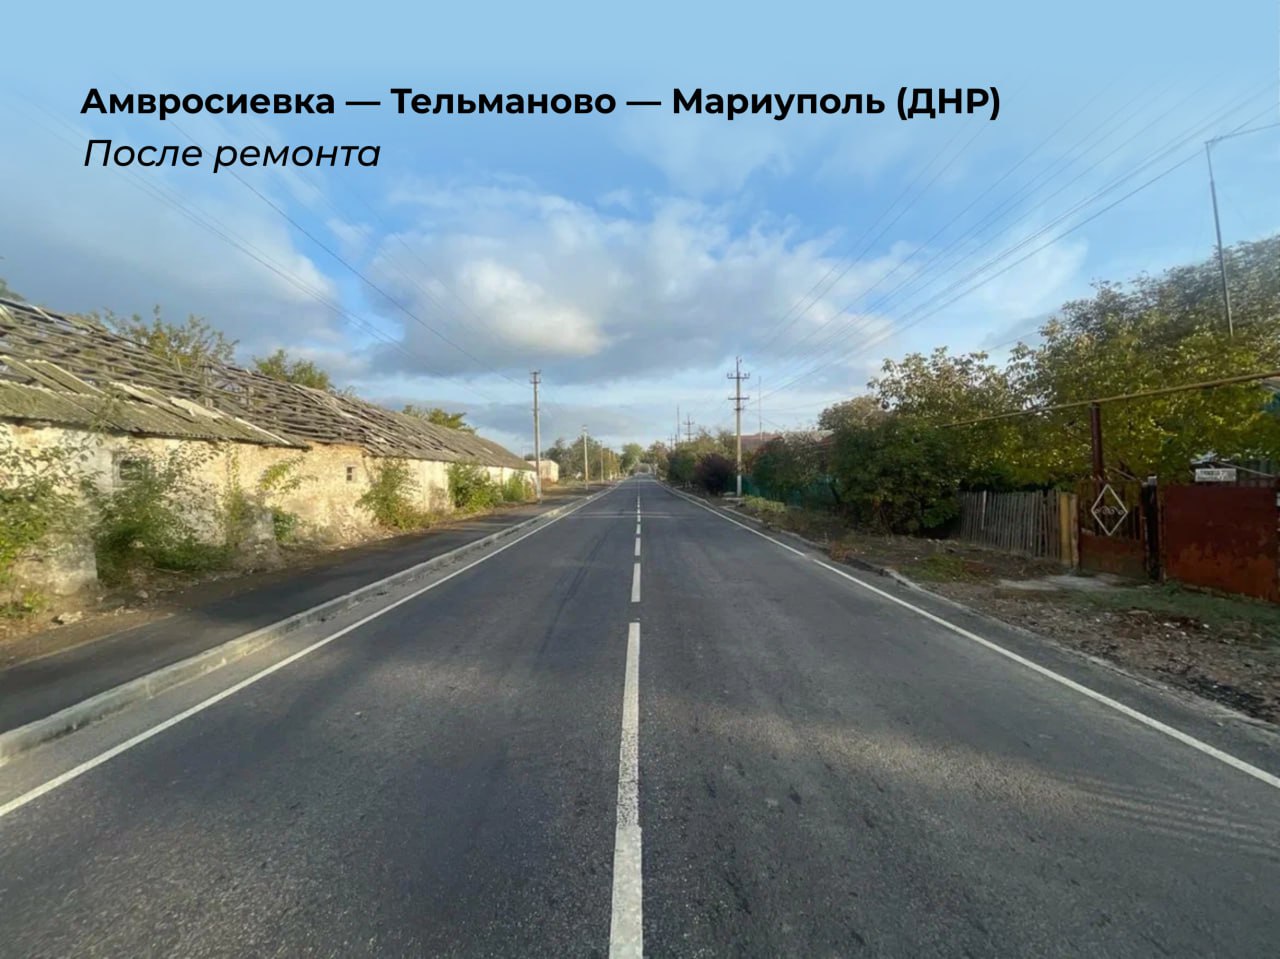 Продолжаем делиться результатами работы дорожников в Донецкой Народной Республике.Местами это была даже не дорога, а направле...